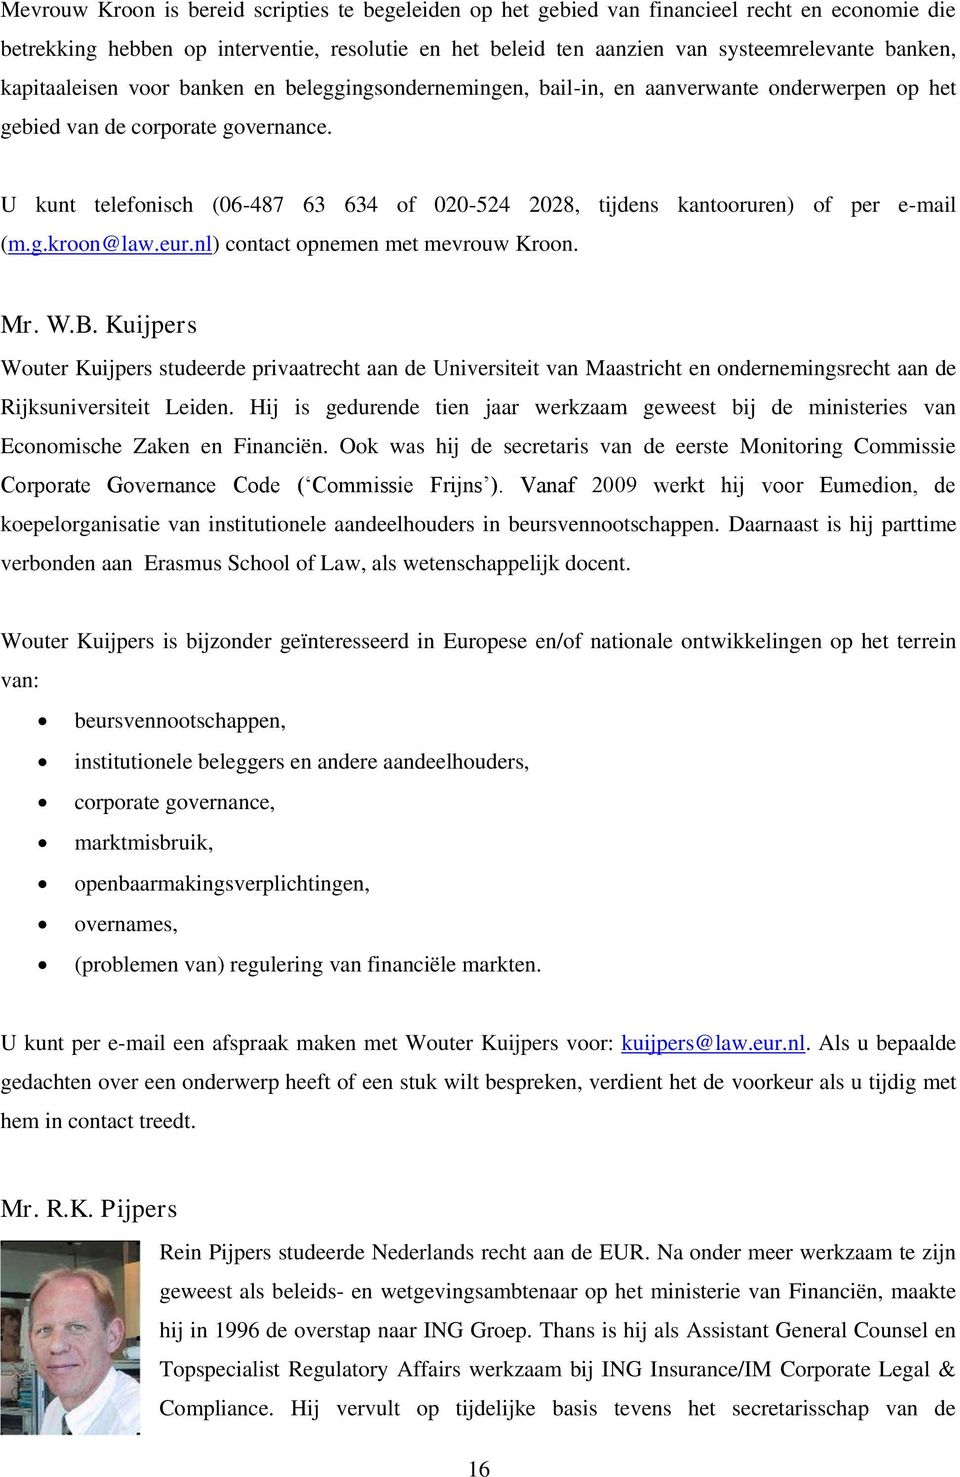 U kunt telefonisch (06-487 63 634 of 020-524 2028, tijdens kantooruren) of per e-mail (m.g.kroon@law.eur.nl) contact opnemen met mevrouw Kroon. Mr. W.B.